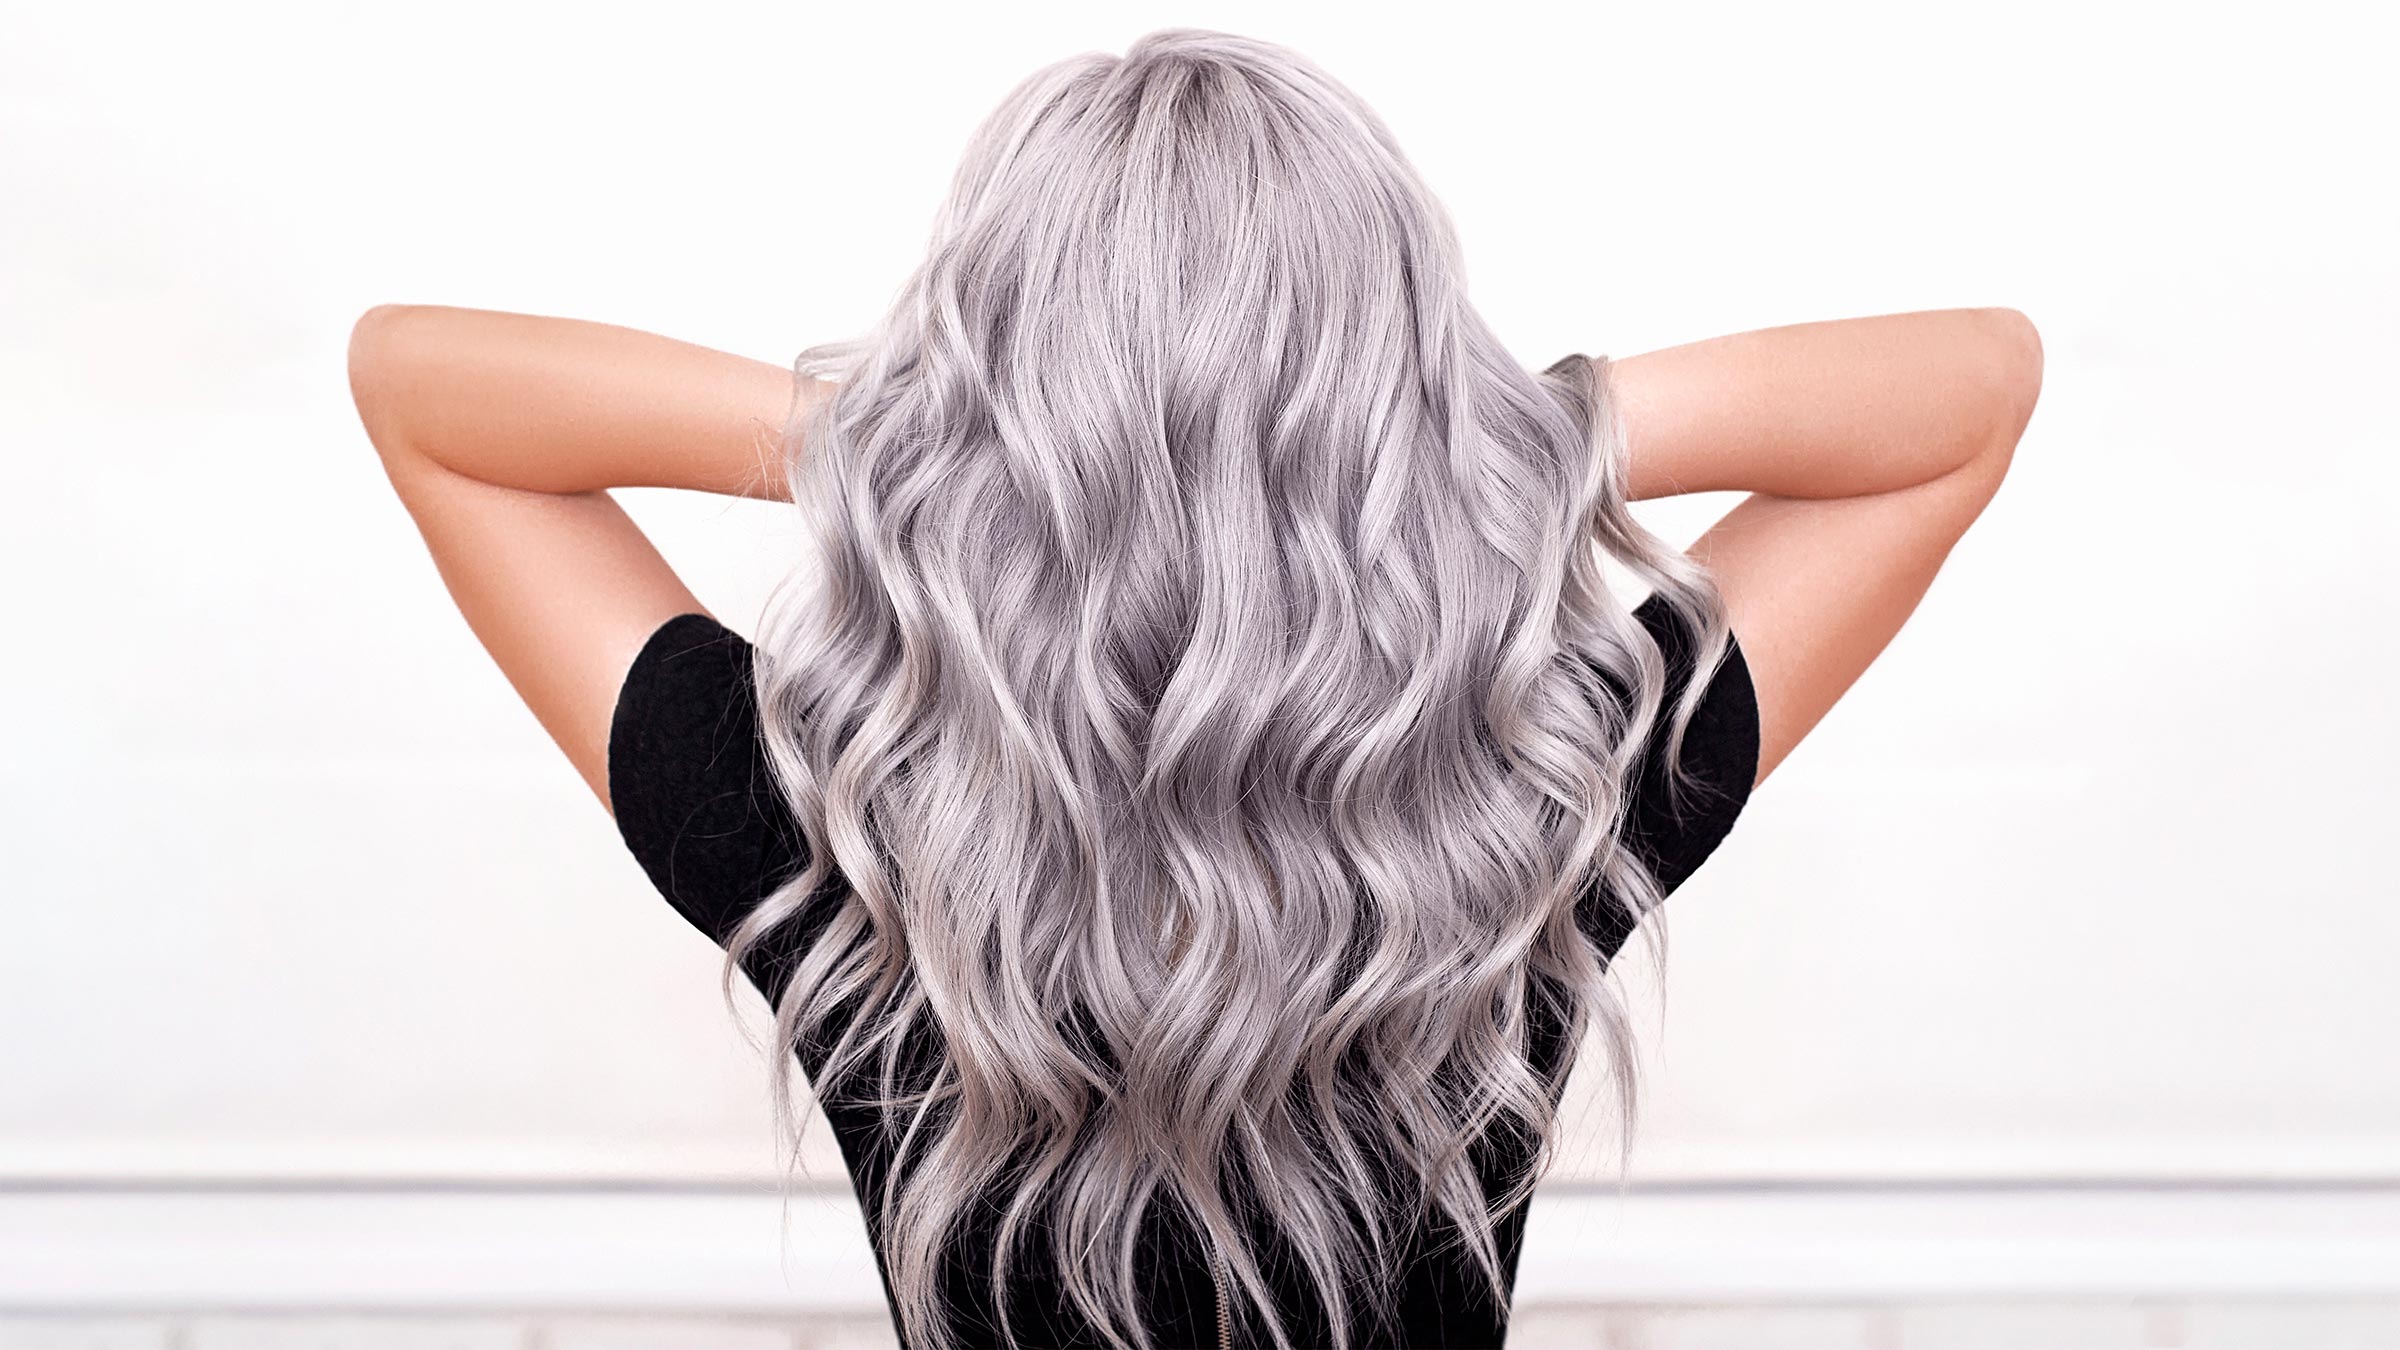 fioletowy szampon do siwych włosów